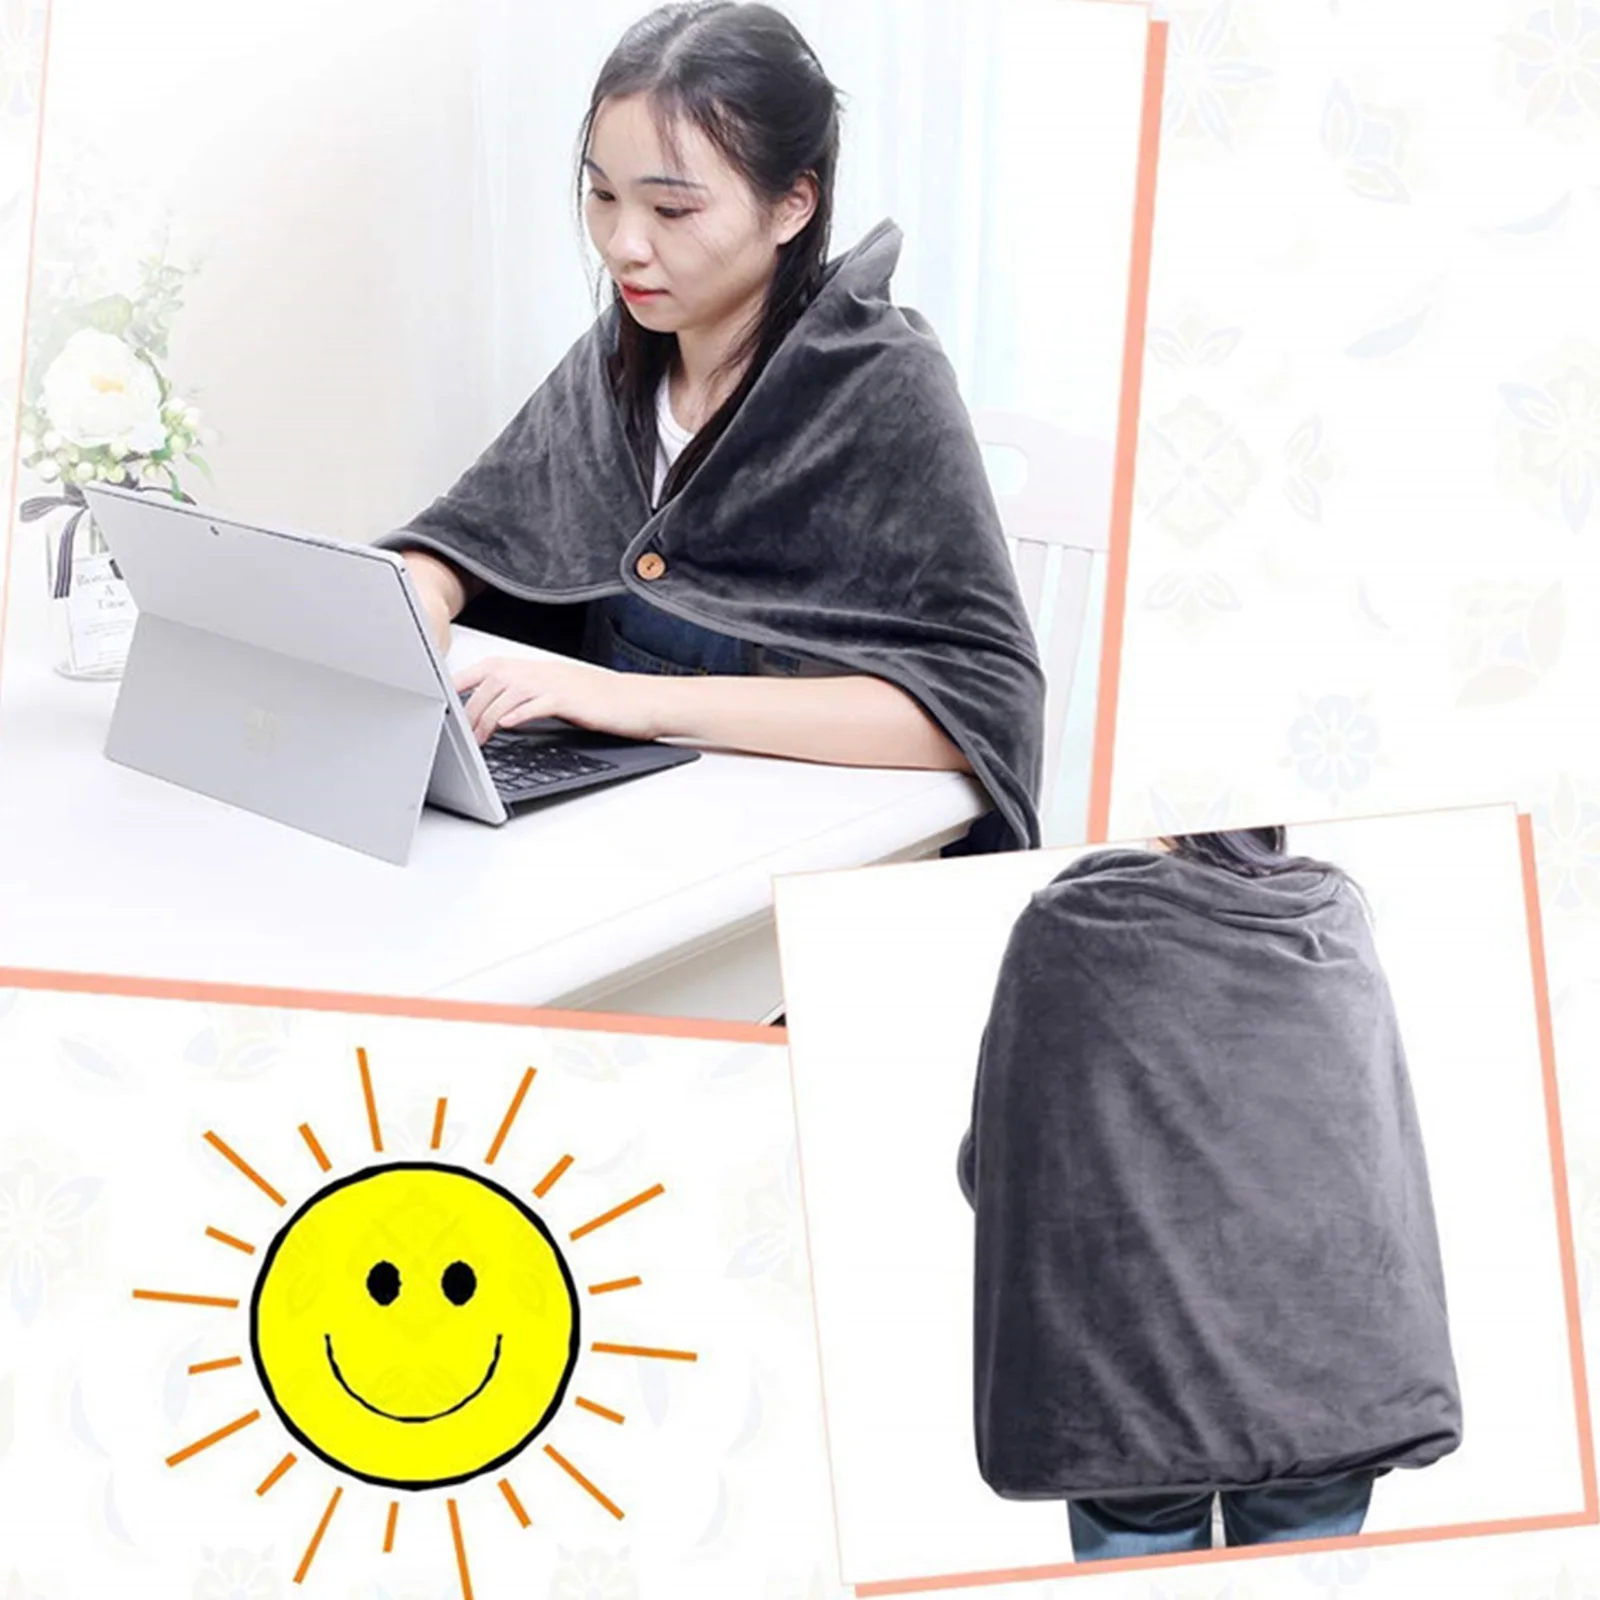 

Флисовая шаль с подогревом, носимое портативное одеяло с электрическим подогревом, питание от USB, Электрический плед одеяло, зимнее теплое одеяло для автомобиля, офиса, дома